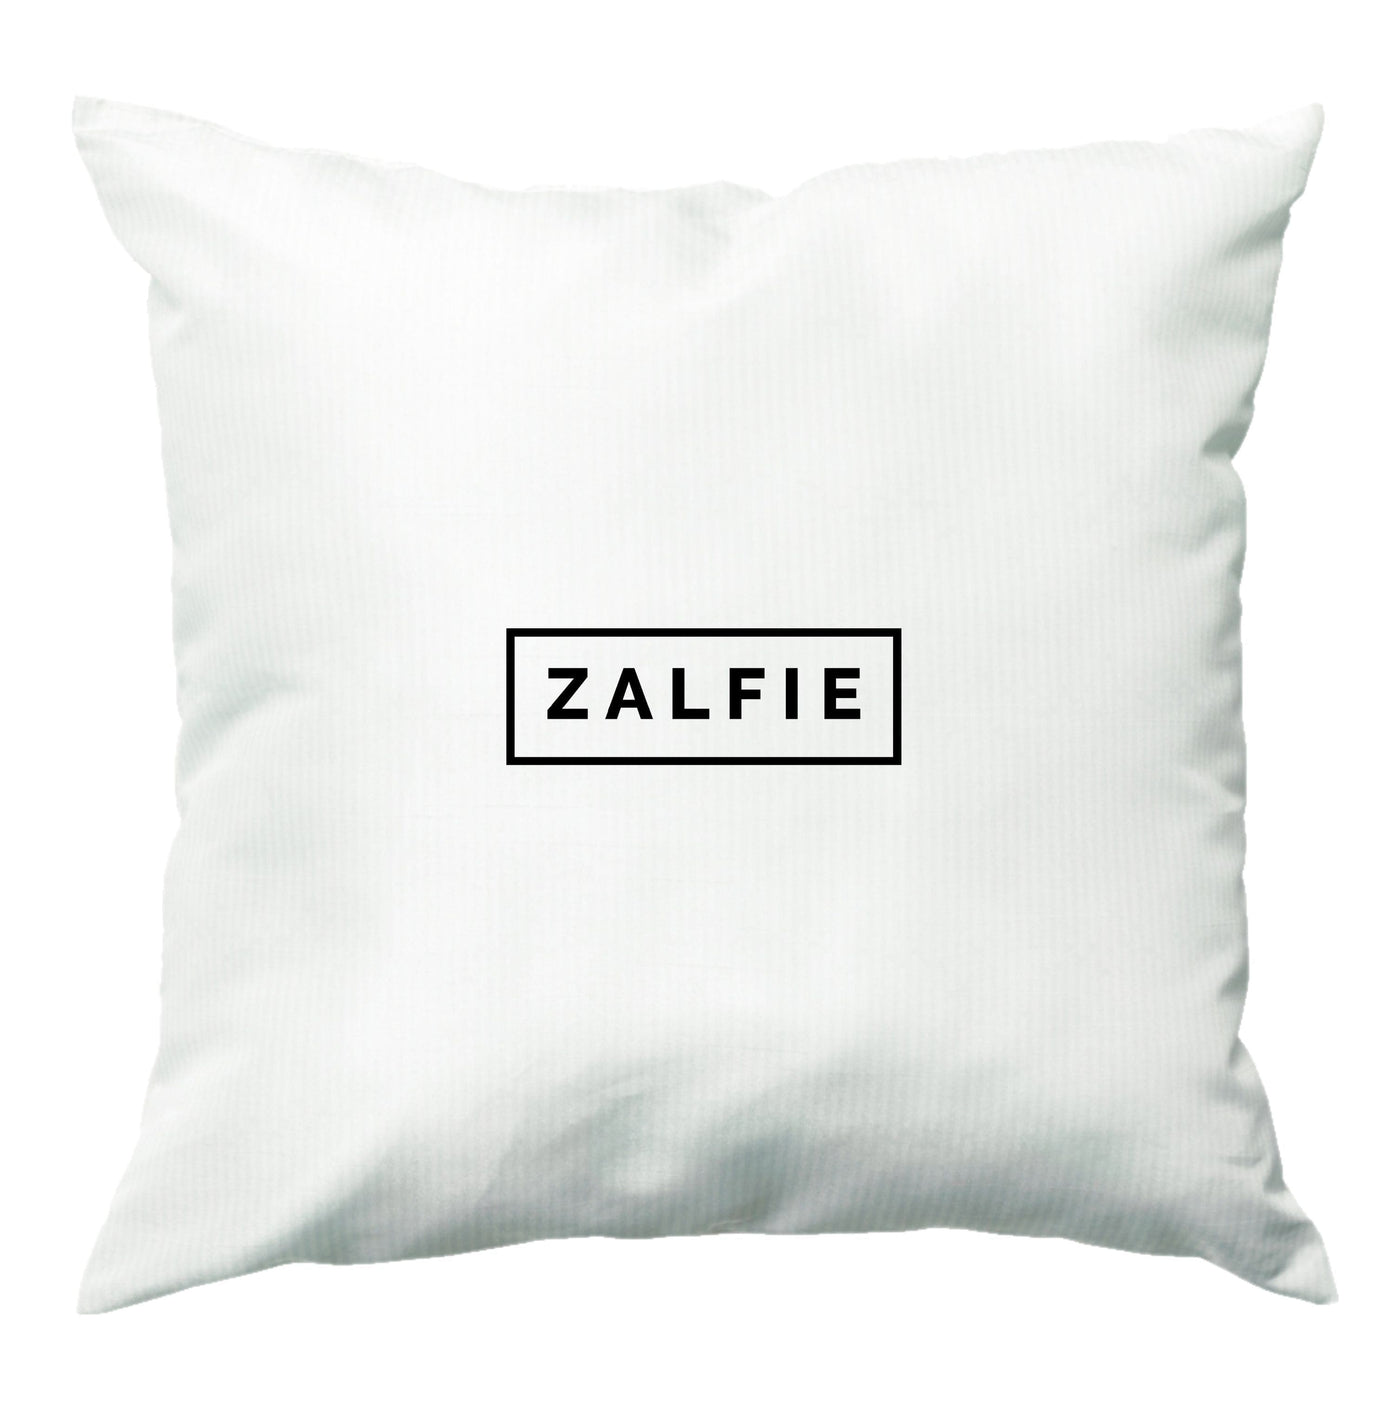 Zalfie - TRXYE Style Cushion